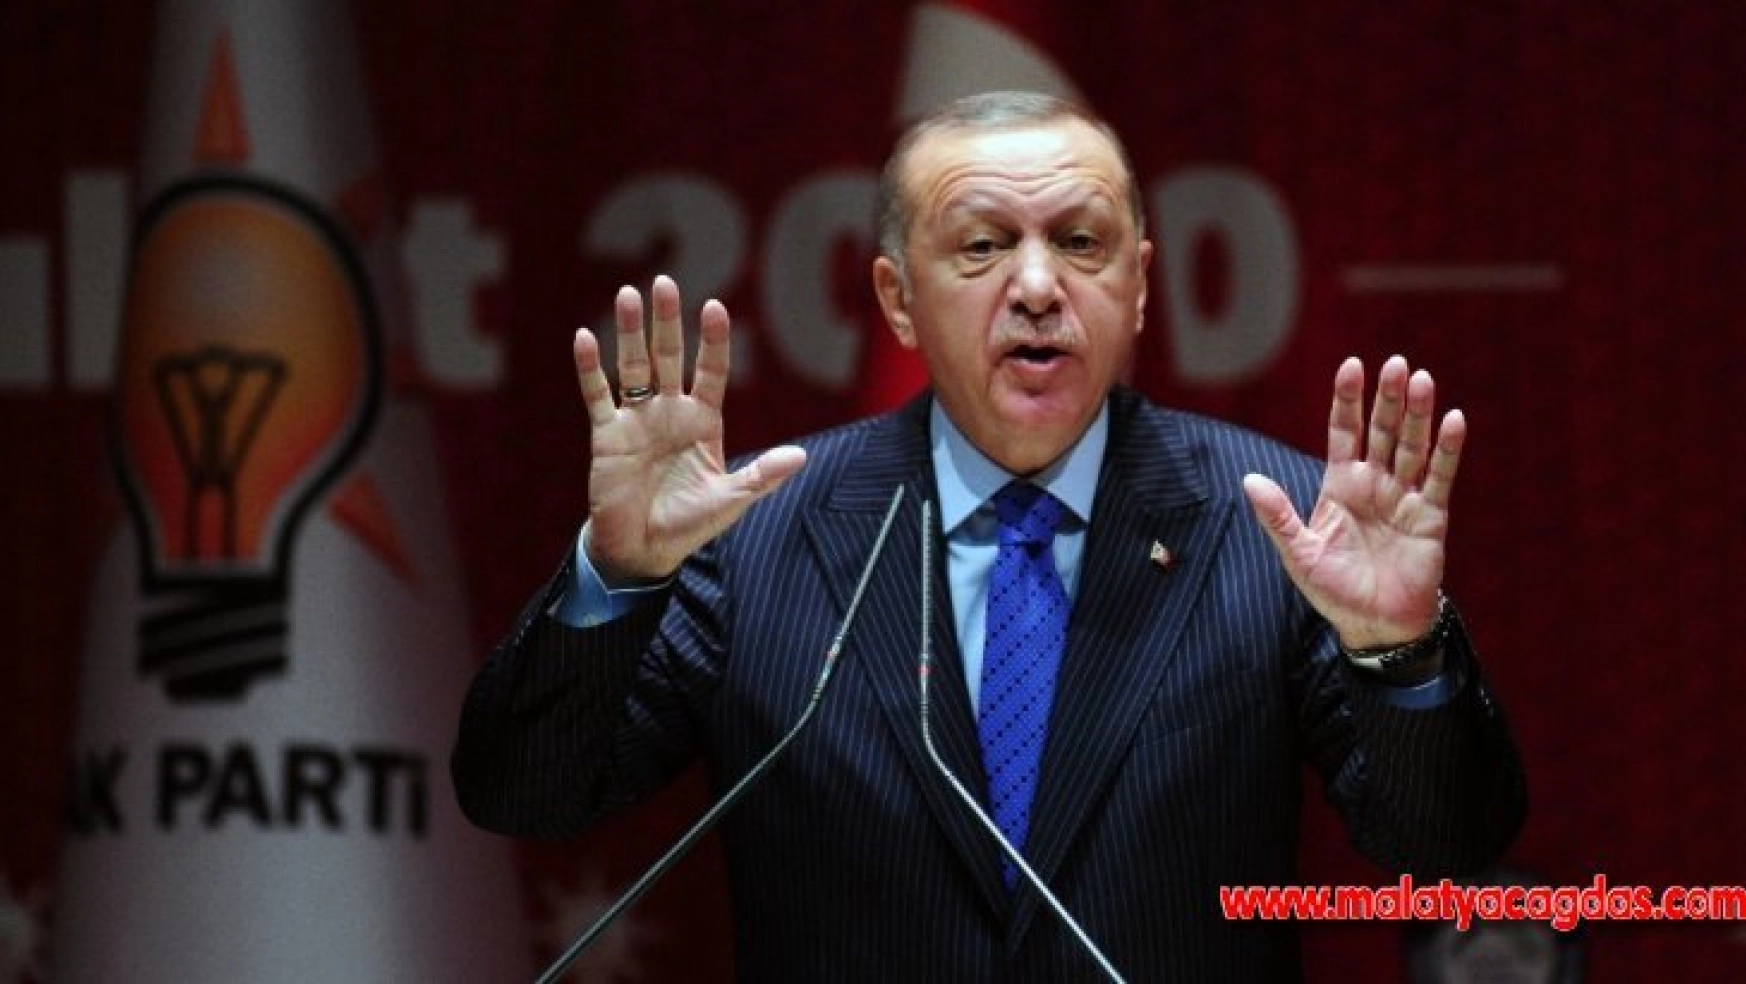 Cumhurbaşkanı Erdoğan: ''Biz Adana Mutabakatı'yla İdlib'deyiz' diyoruz, Bay Kemal 'Orada ne işiniz var' diyor'